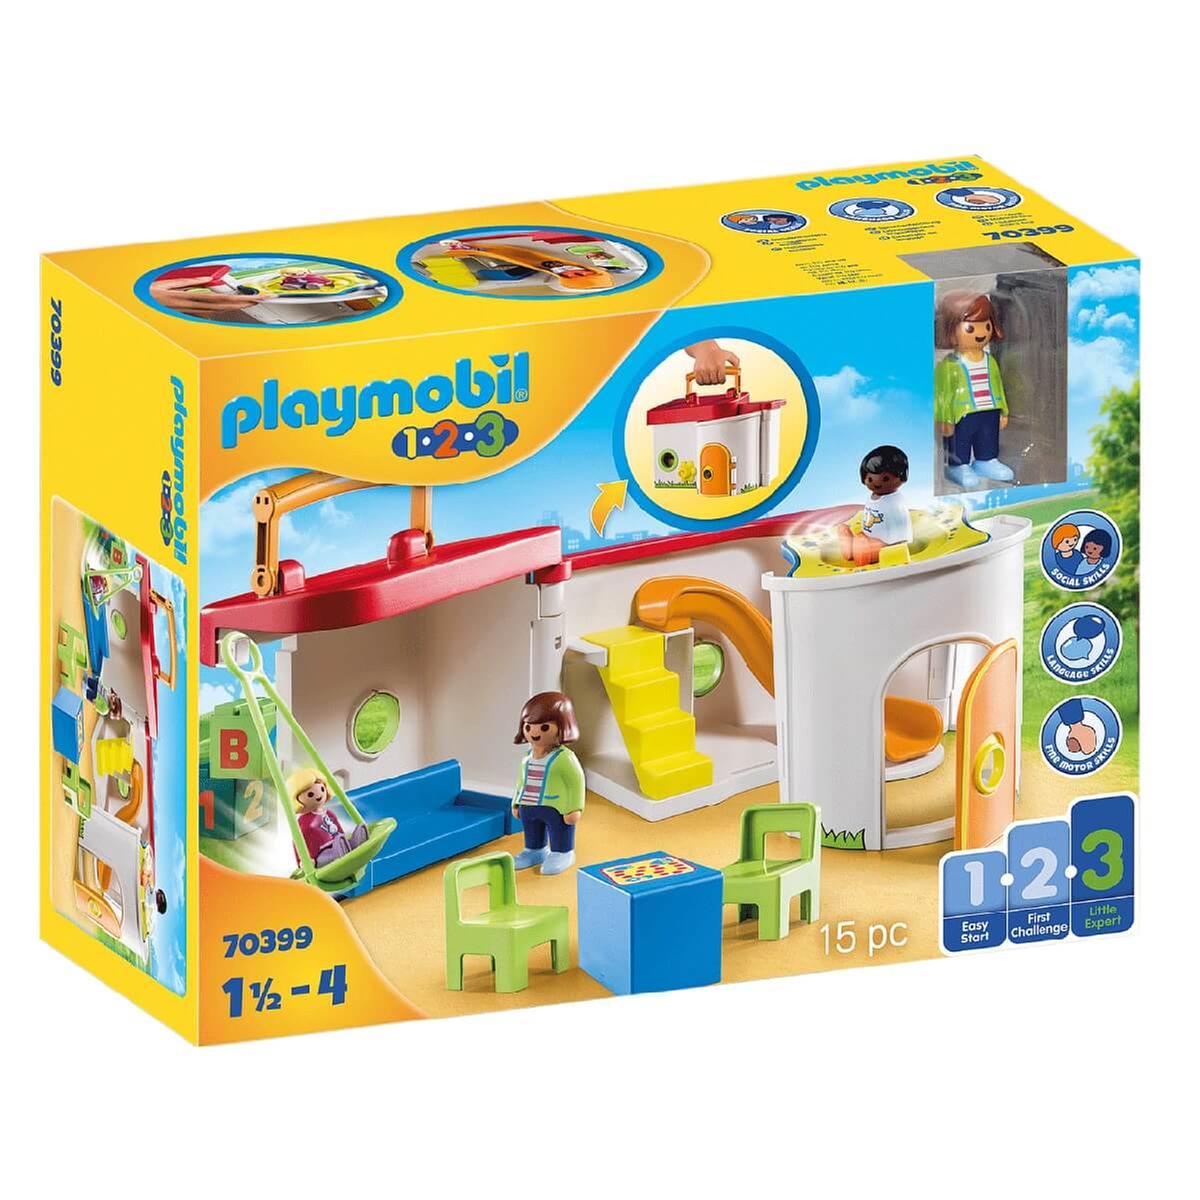 Playmobil - Maleta Infantário - 70399 | Playmobil 123 | Loja de brinquedos  e videojogos Online Toysrus